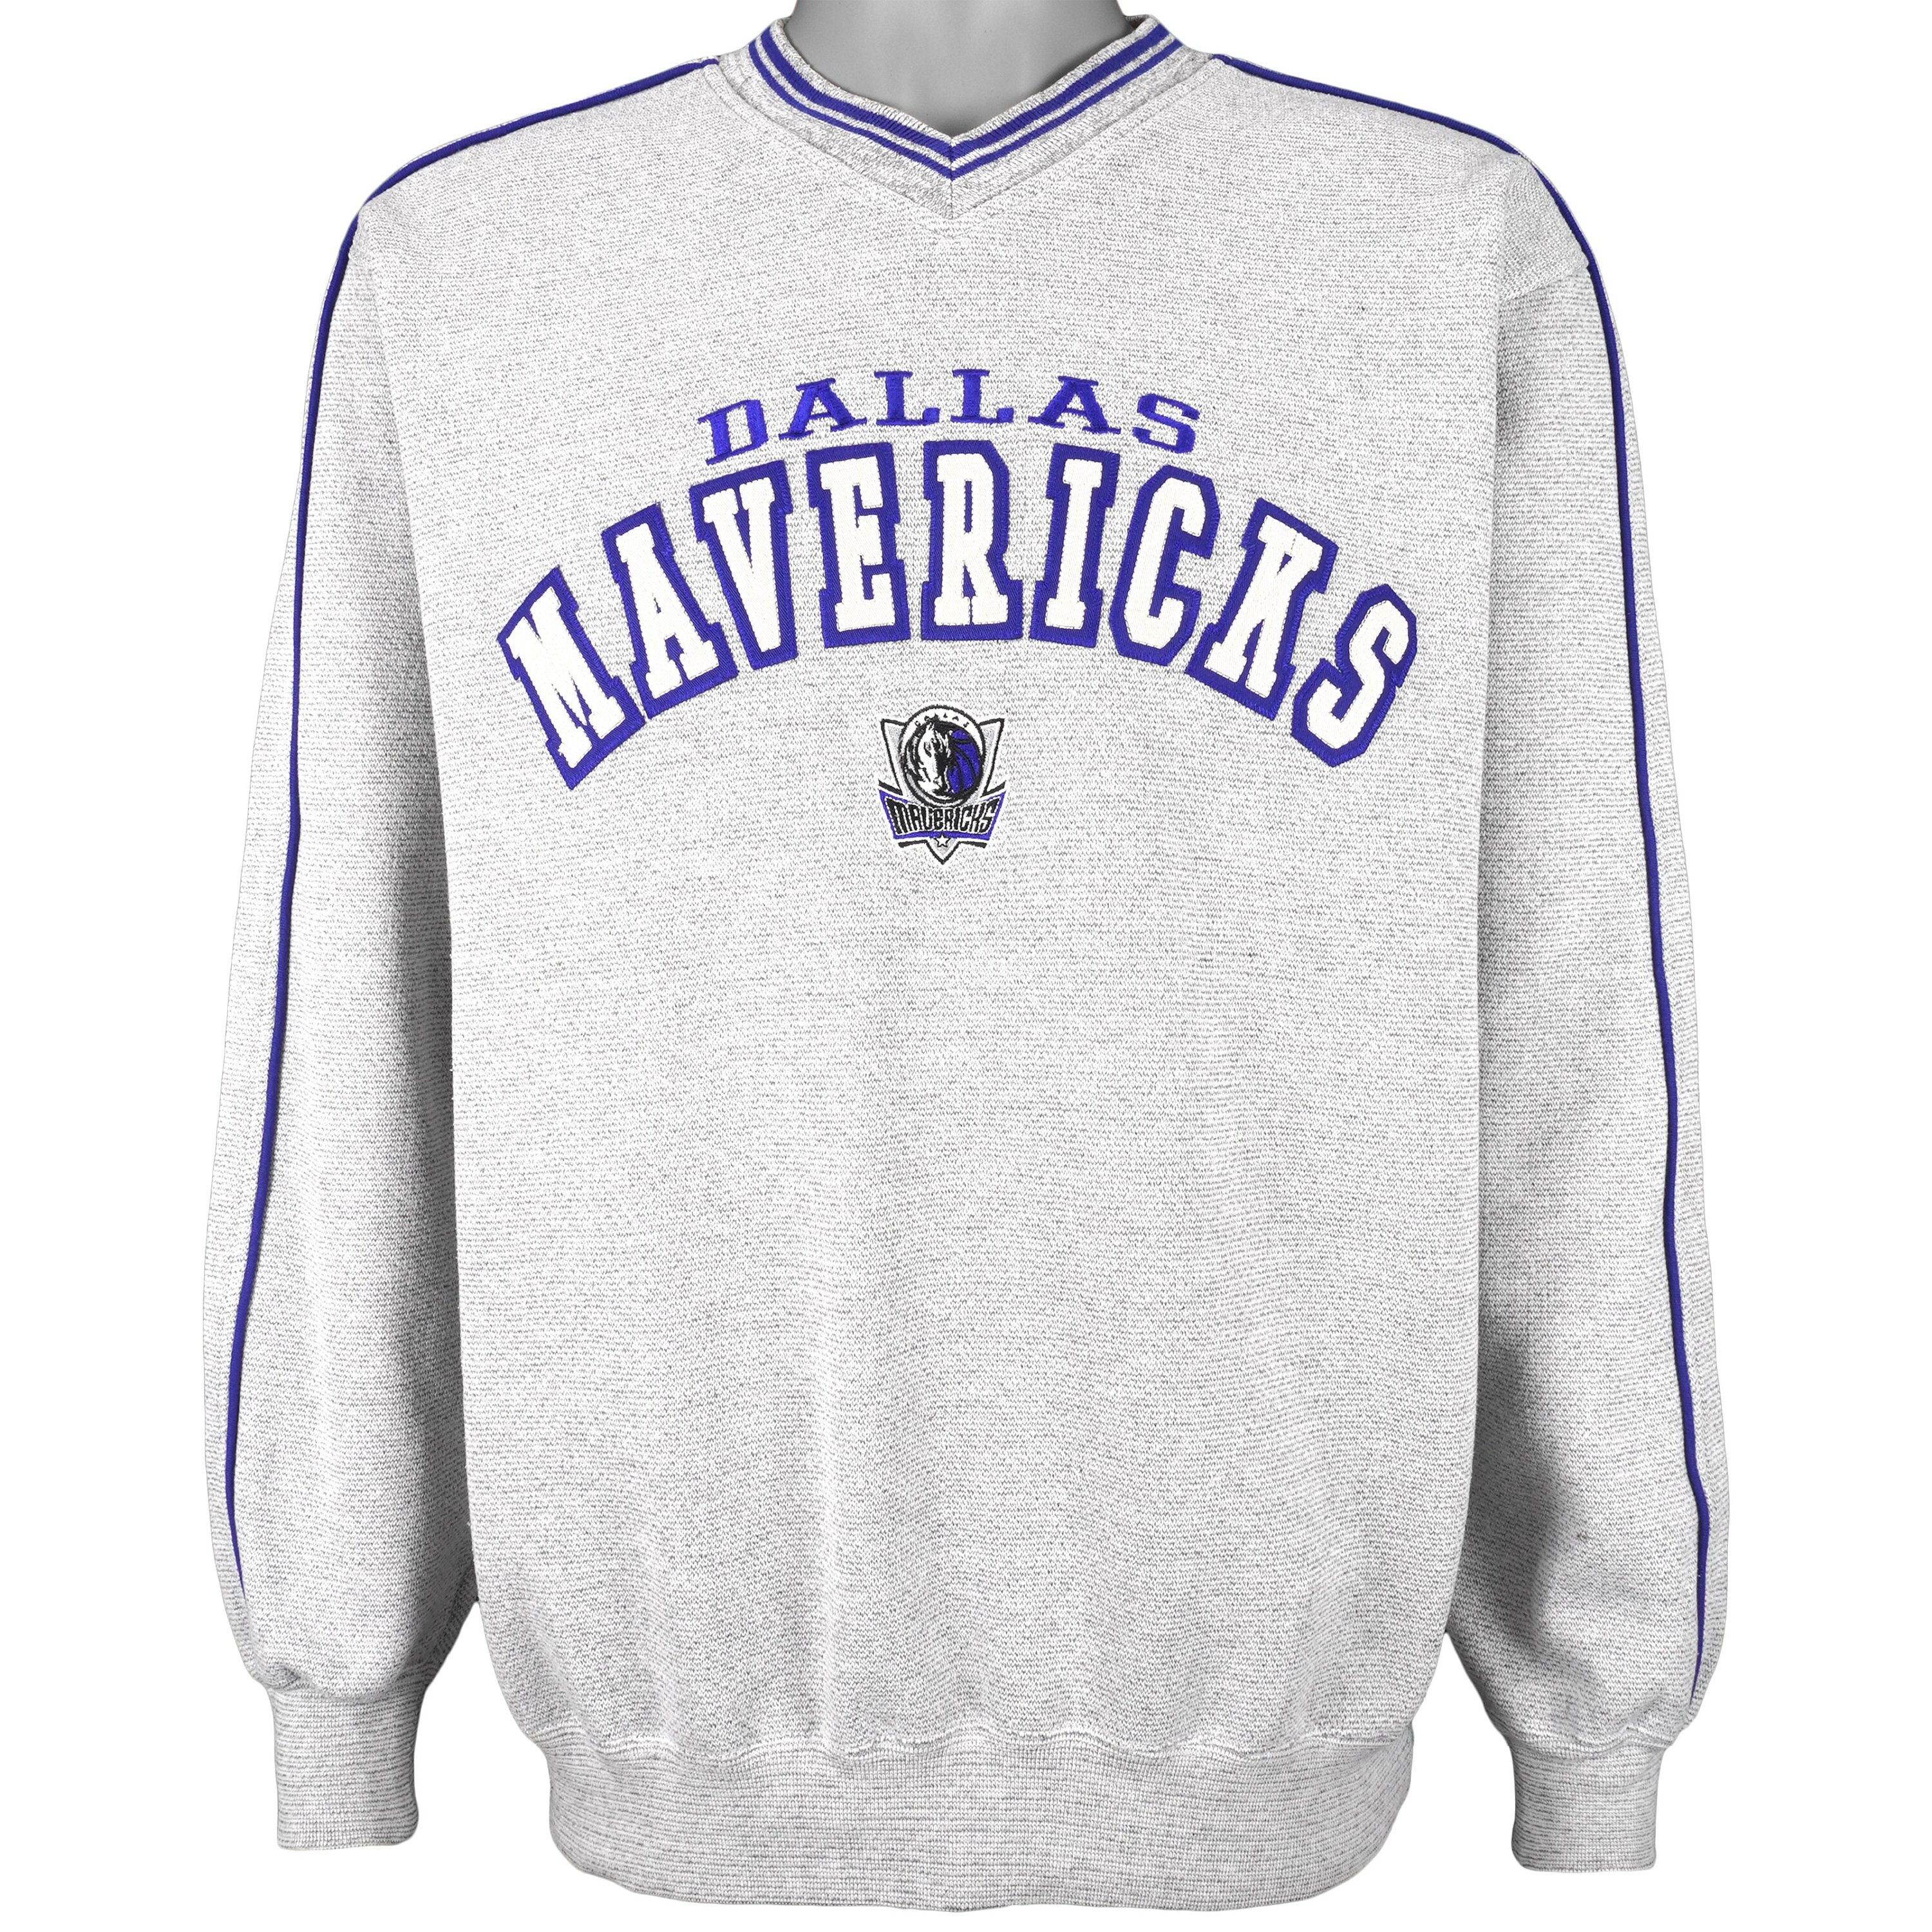 Dallas Mavericks Shirts, Sweaters, Mavericks Ugly Sweaters, Dress